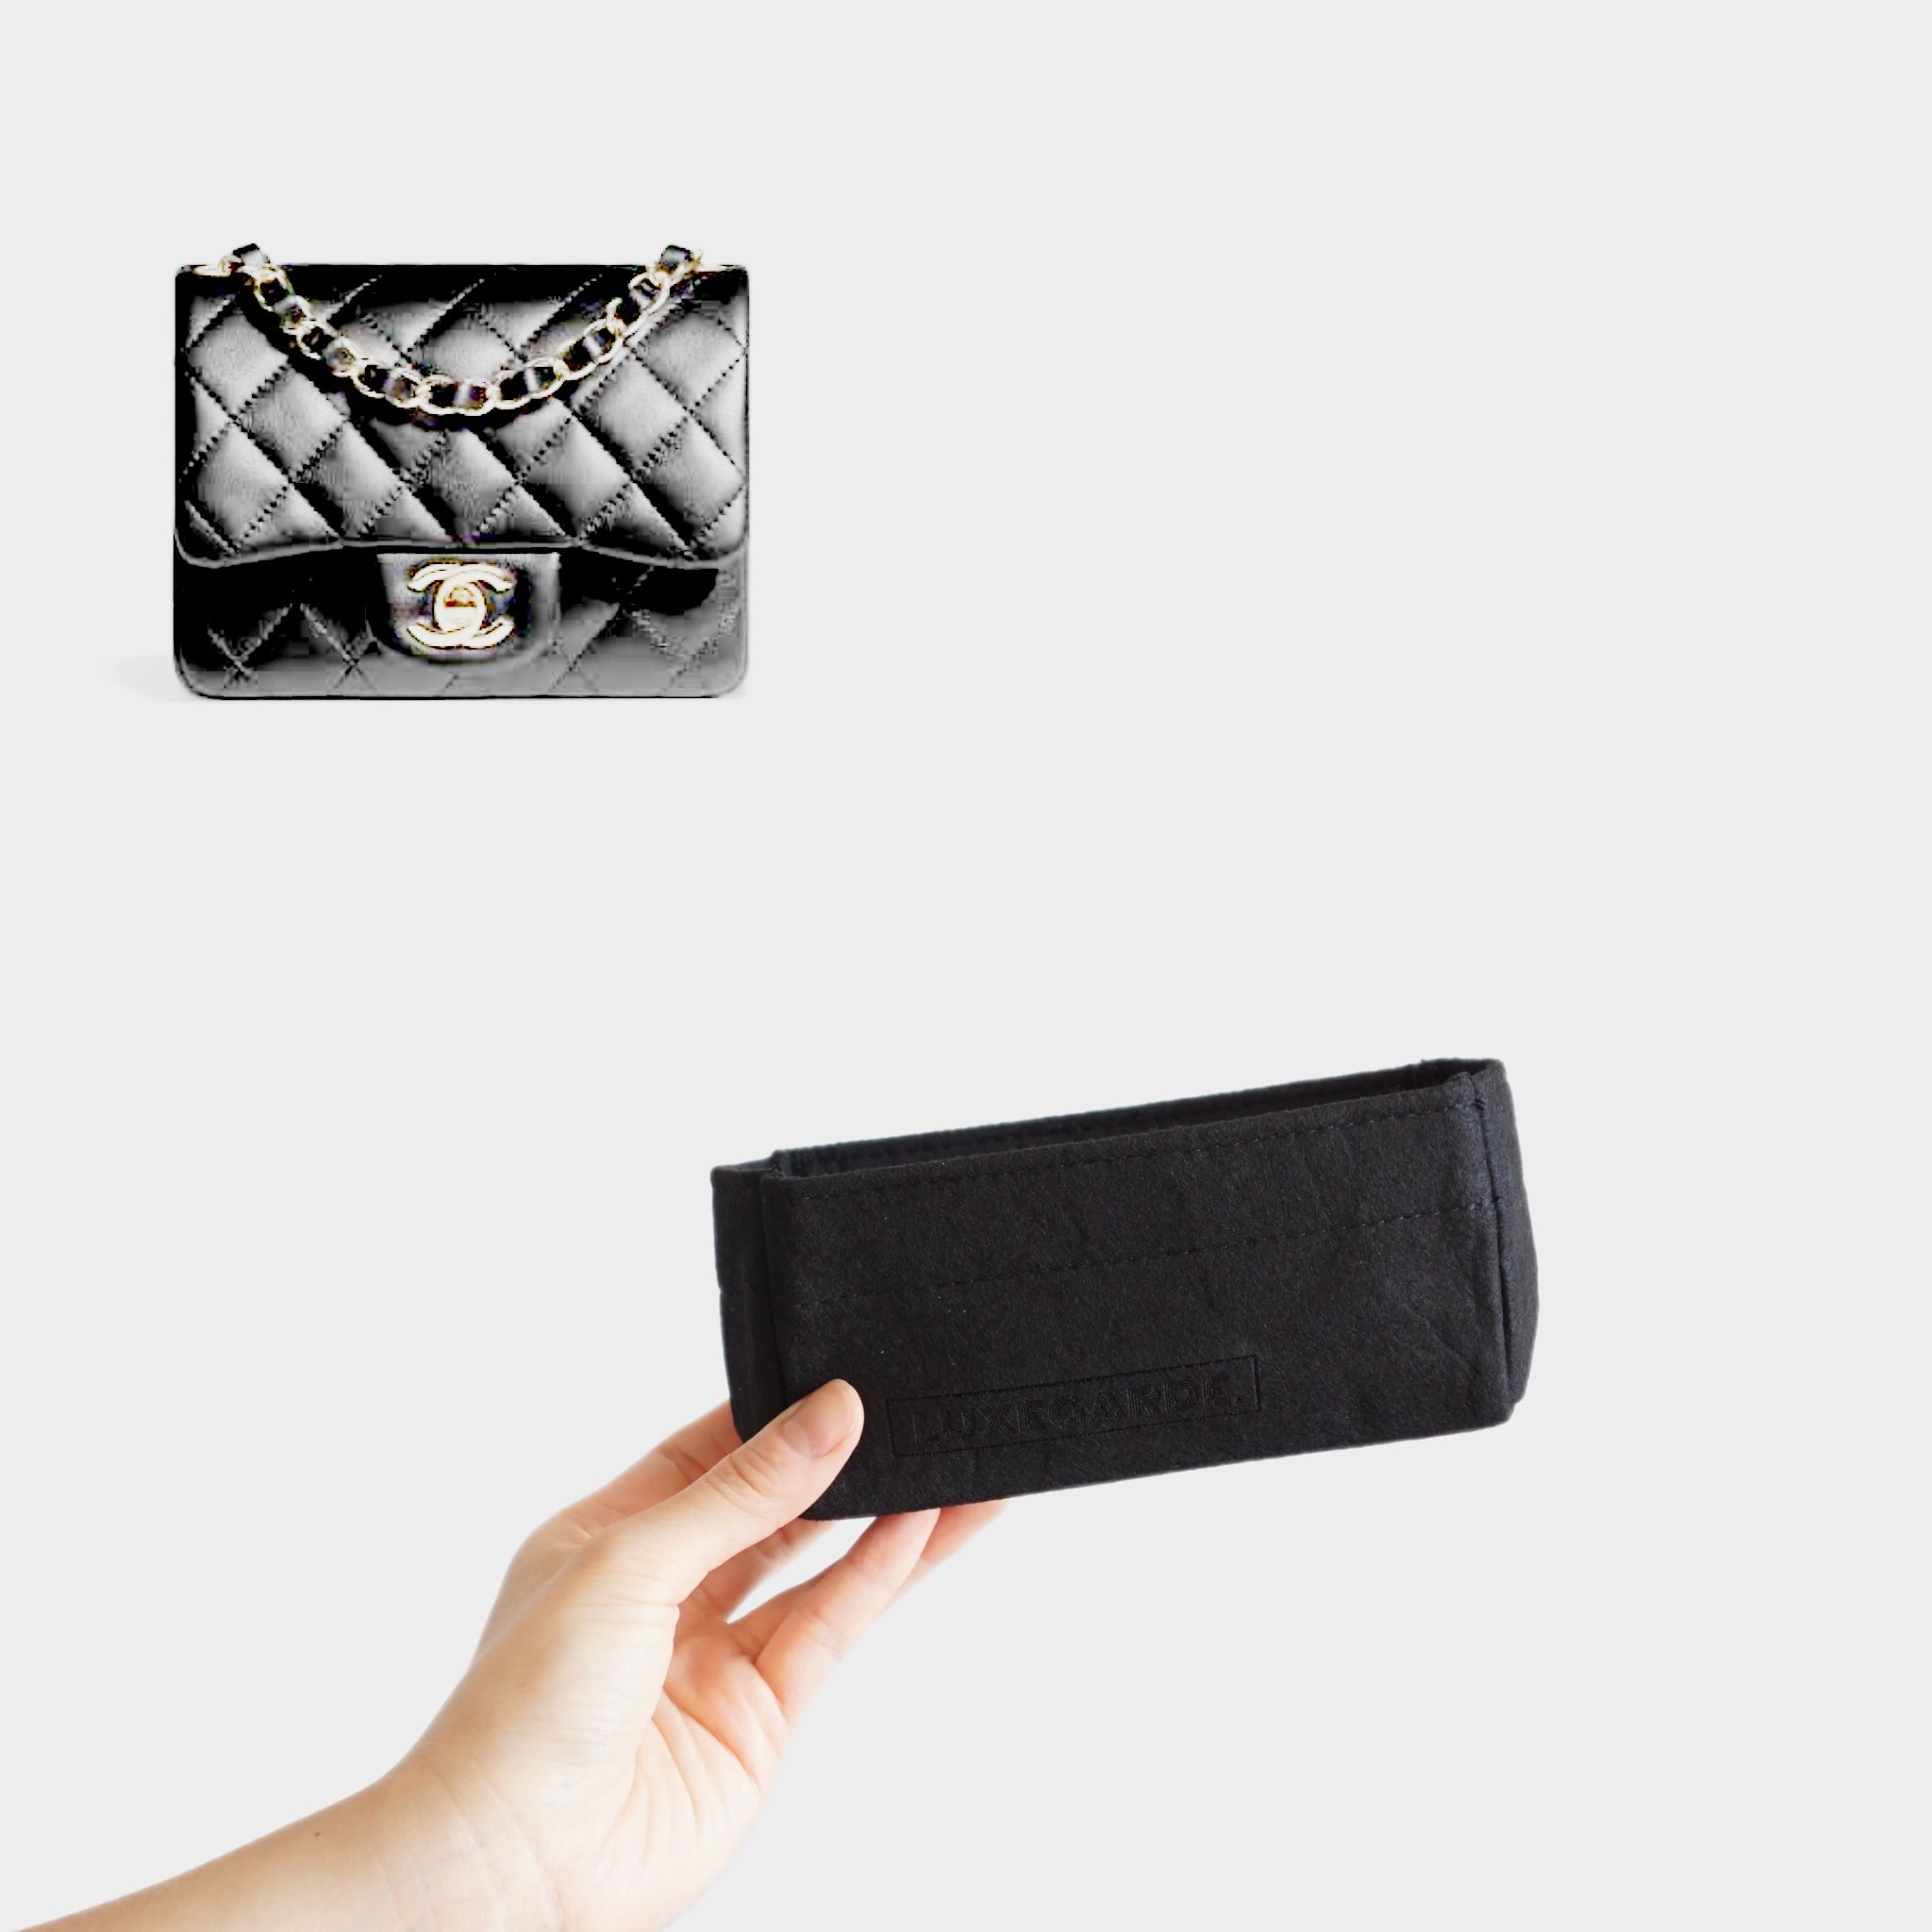 DGAZ Silk Handbag Organizer Insert Fits Chanel 19 Handbag，Silky Smooth  HandBag Organiser, Luxury Handbag & Purse Shaper (Wine Red, Flap26)